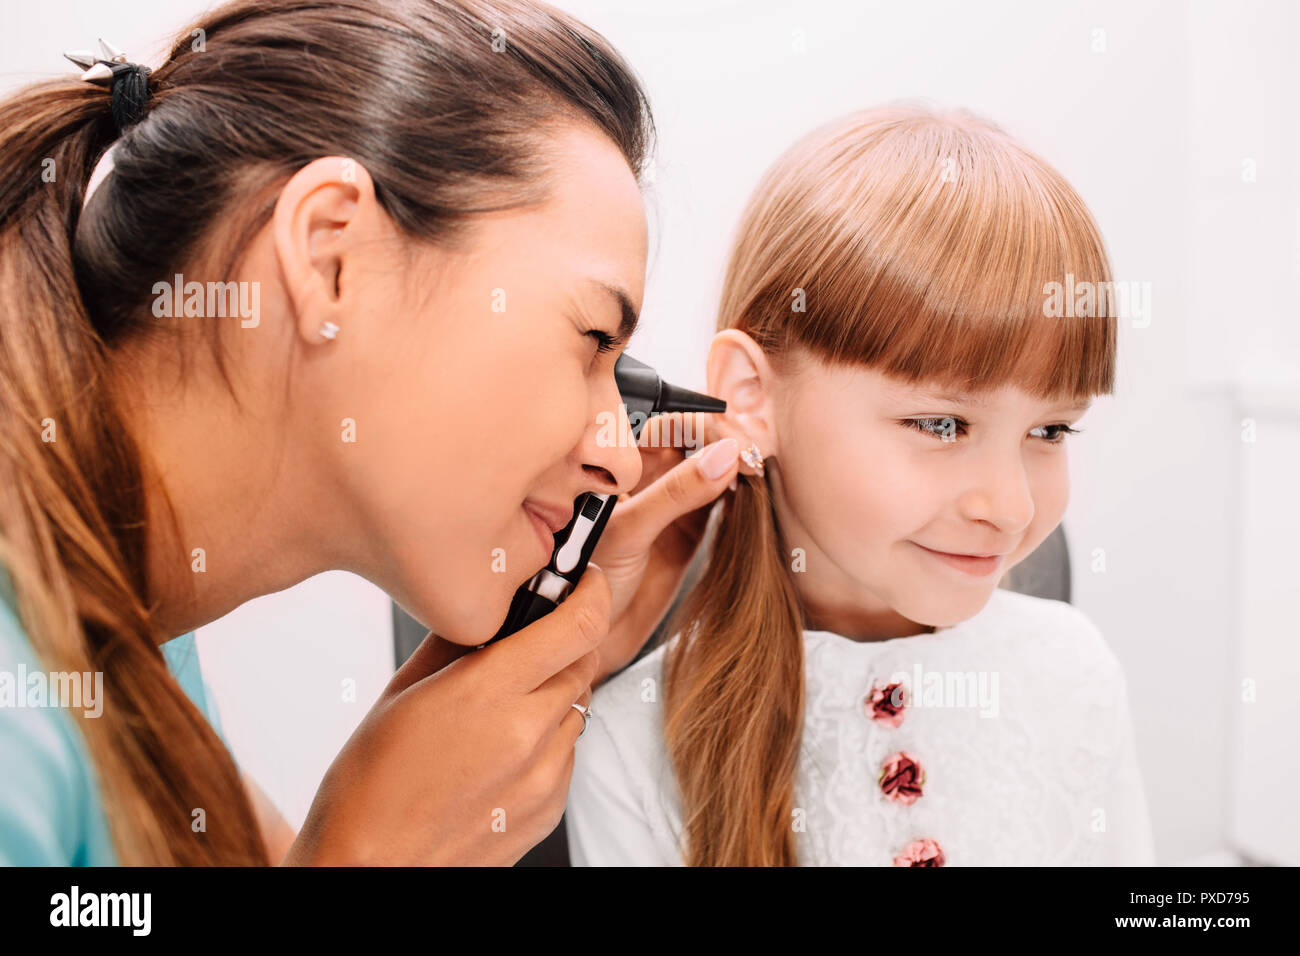 Sonriente doctor examinar el oído del niño mediante otoscopio Foto de stock